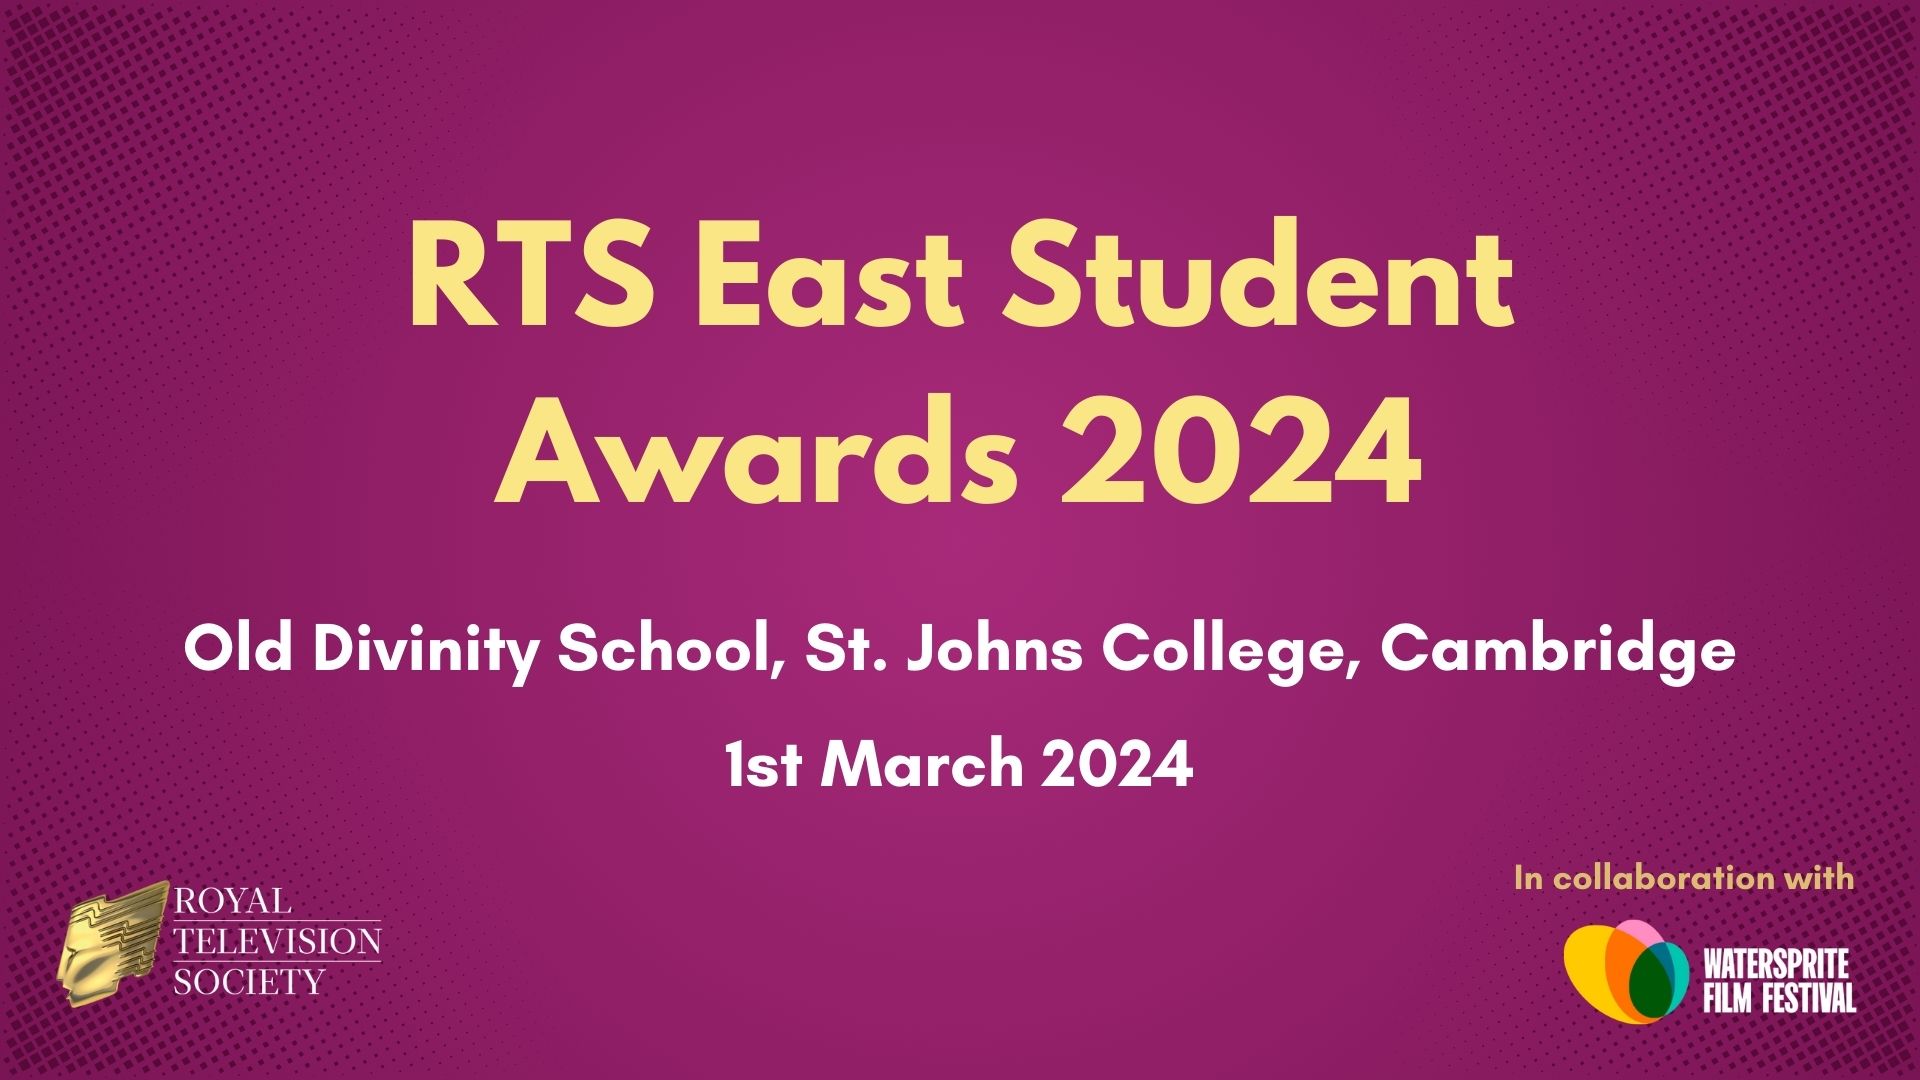 RTS East Student Awards 2024 Royal Television Society